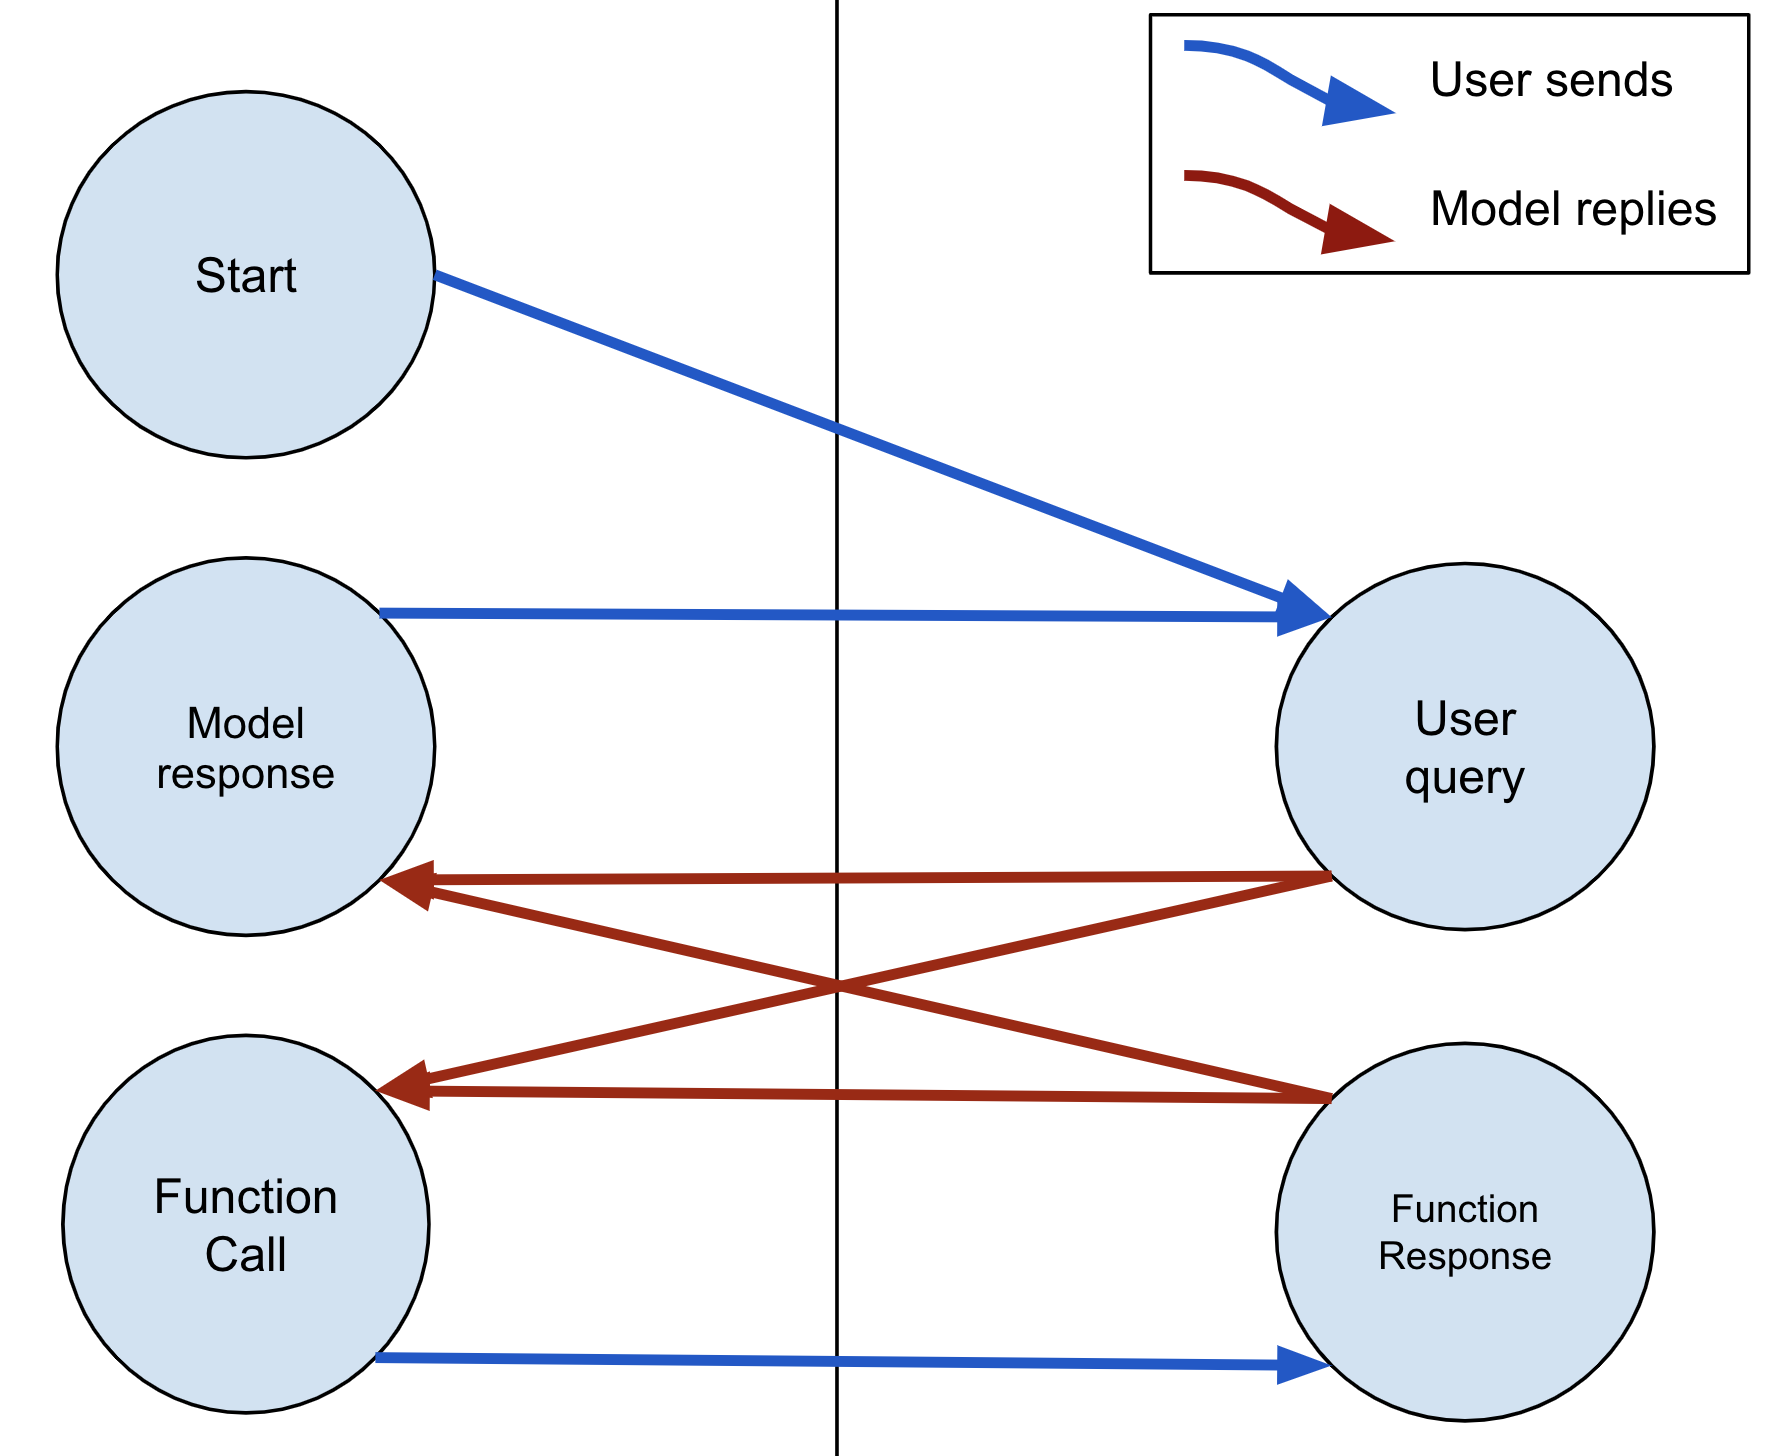 模型一律可以用文字或 FunctionCall 回覆。如果模型傳送 FunctionCall，使用者必須使用 FunctionResponse 回覆